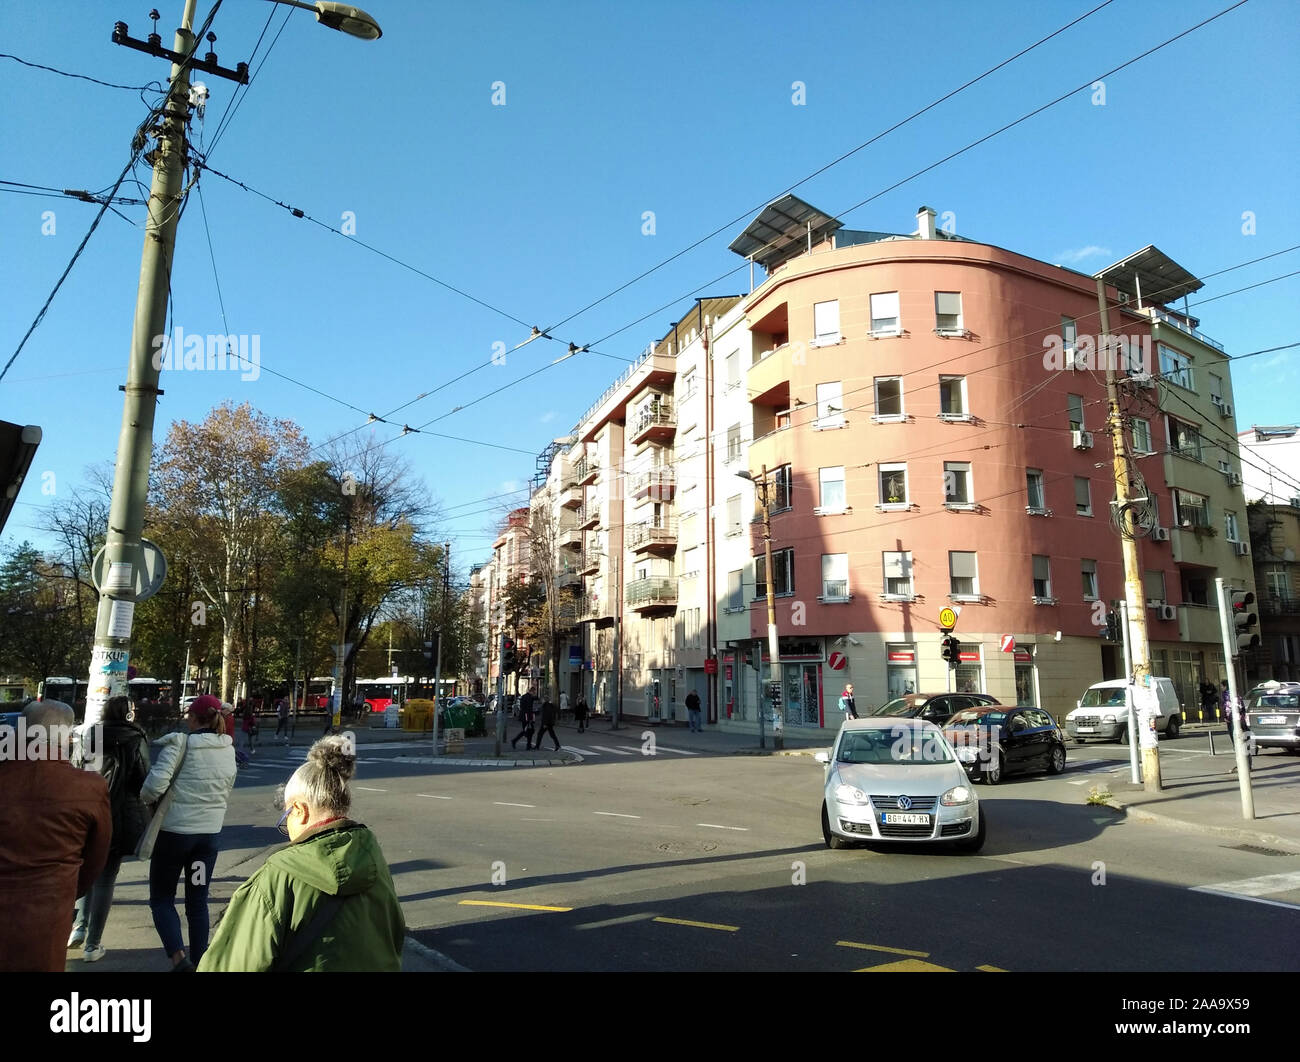 Crveni Krst, Vracar, Belgrado, Serbia - Novembre 18, 2019: piazza e incrocio con alberi nuovi edifici ad angolo Foto Stock